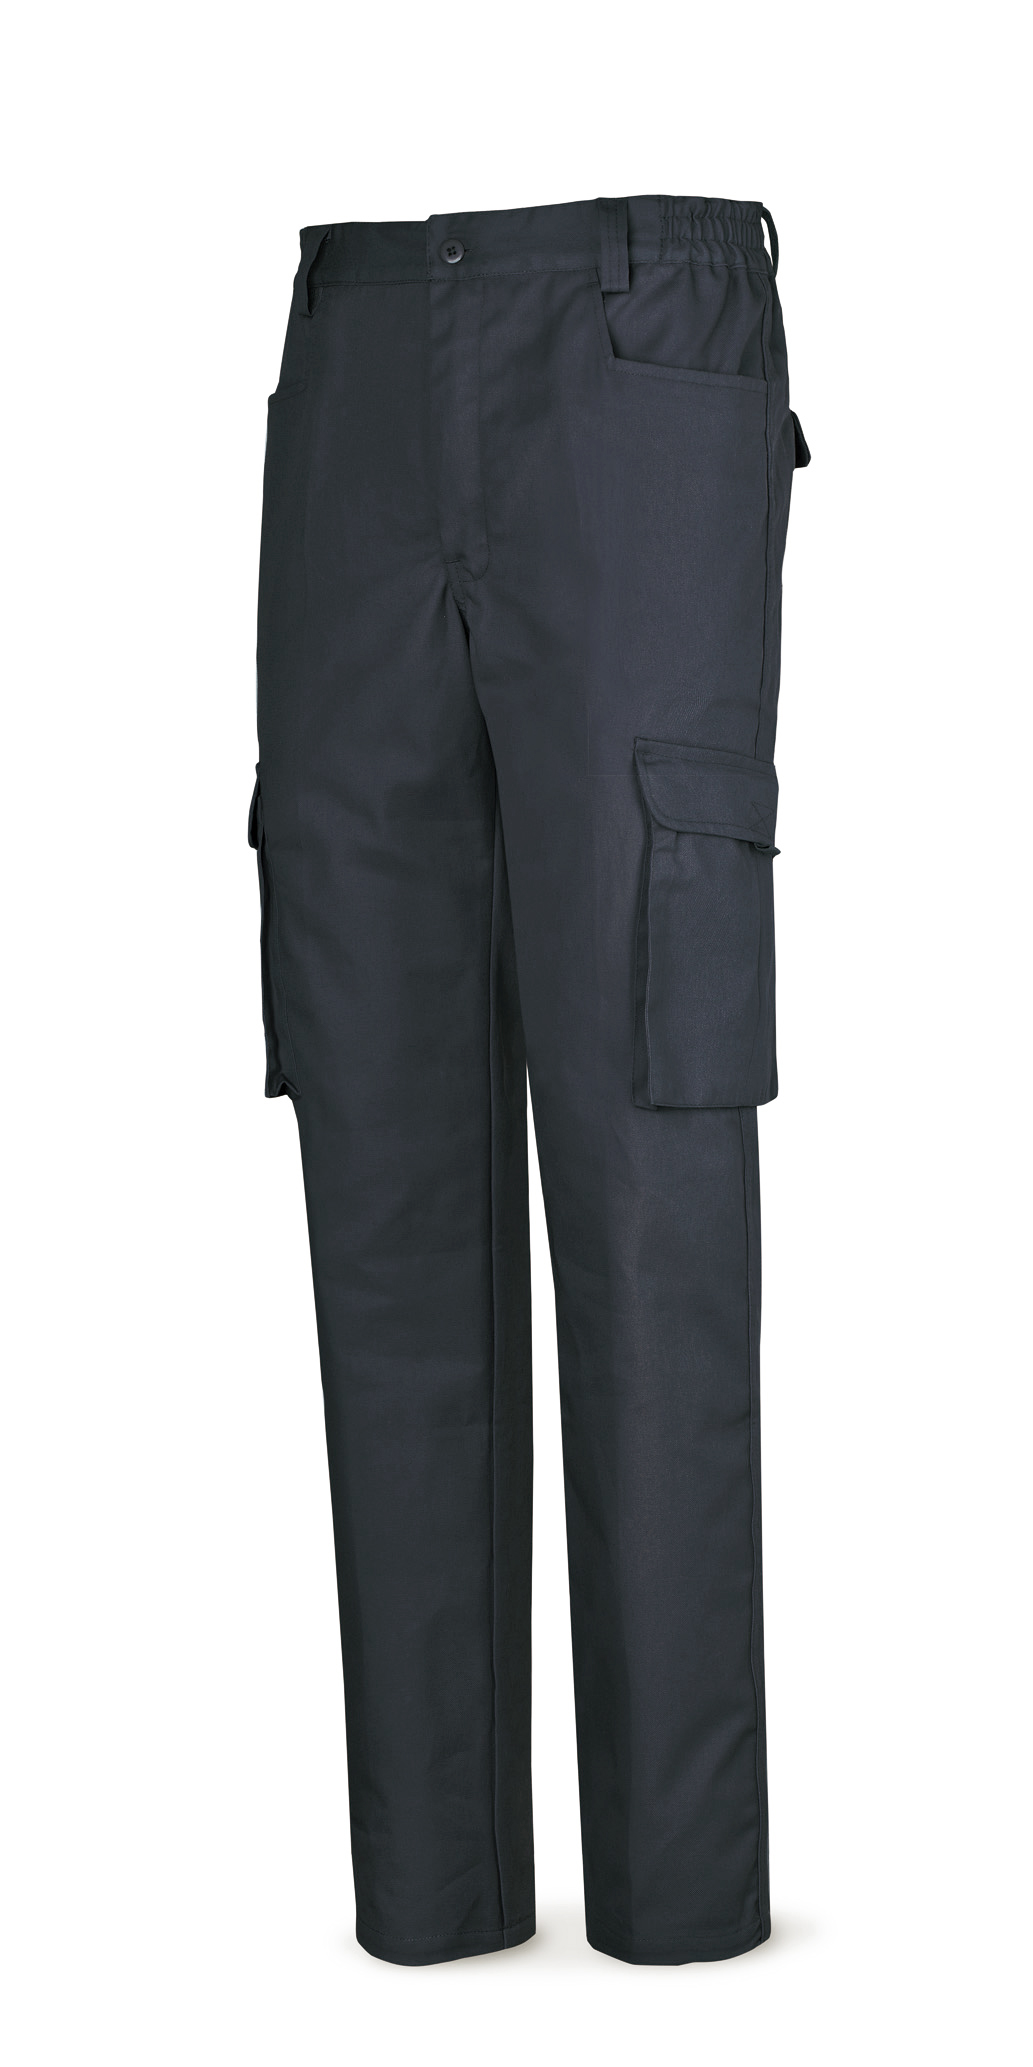 488-PA Top Vestuario Laboral Serie Top Pantalón azul marino algodón de 245 g. 